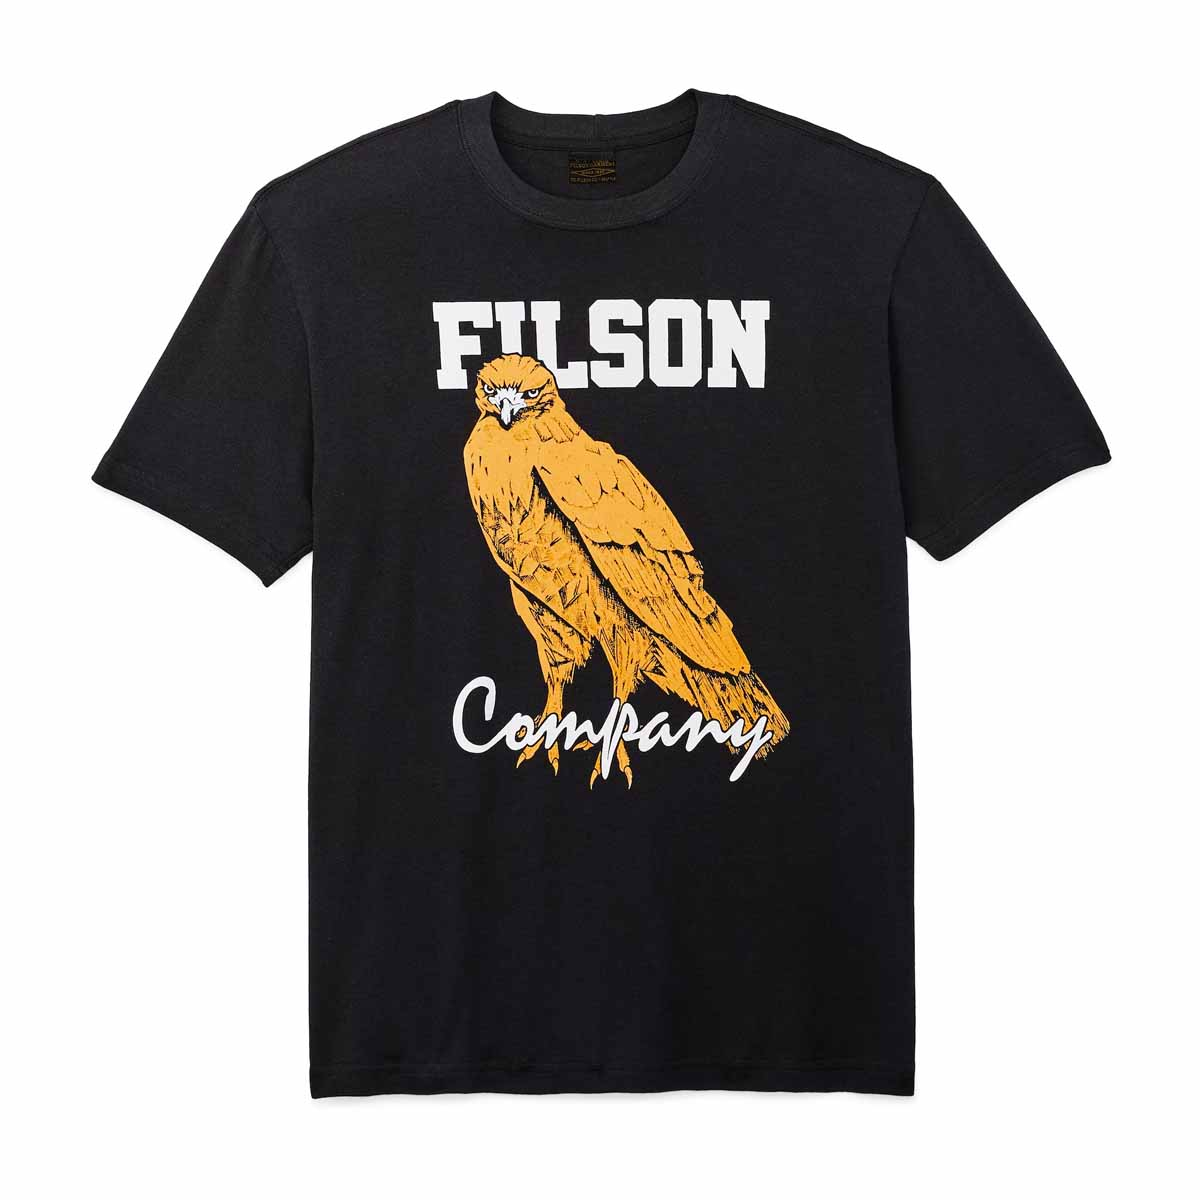 Filson Pioneer Graphic T-Shirt Black/Bird of Grey, strapazierfähiges T-Shirt mit angenehmem Tragegefühl, das seine Struktur über die ganze Saison behält